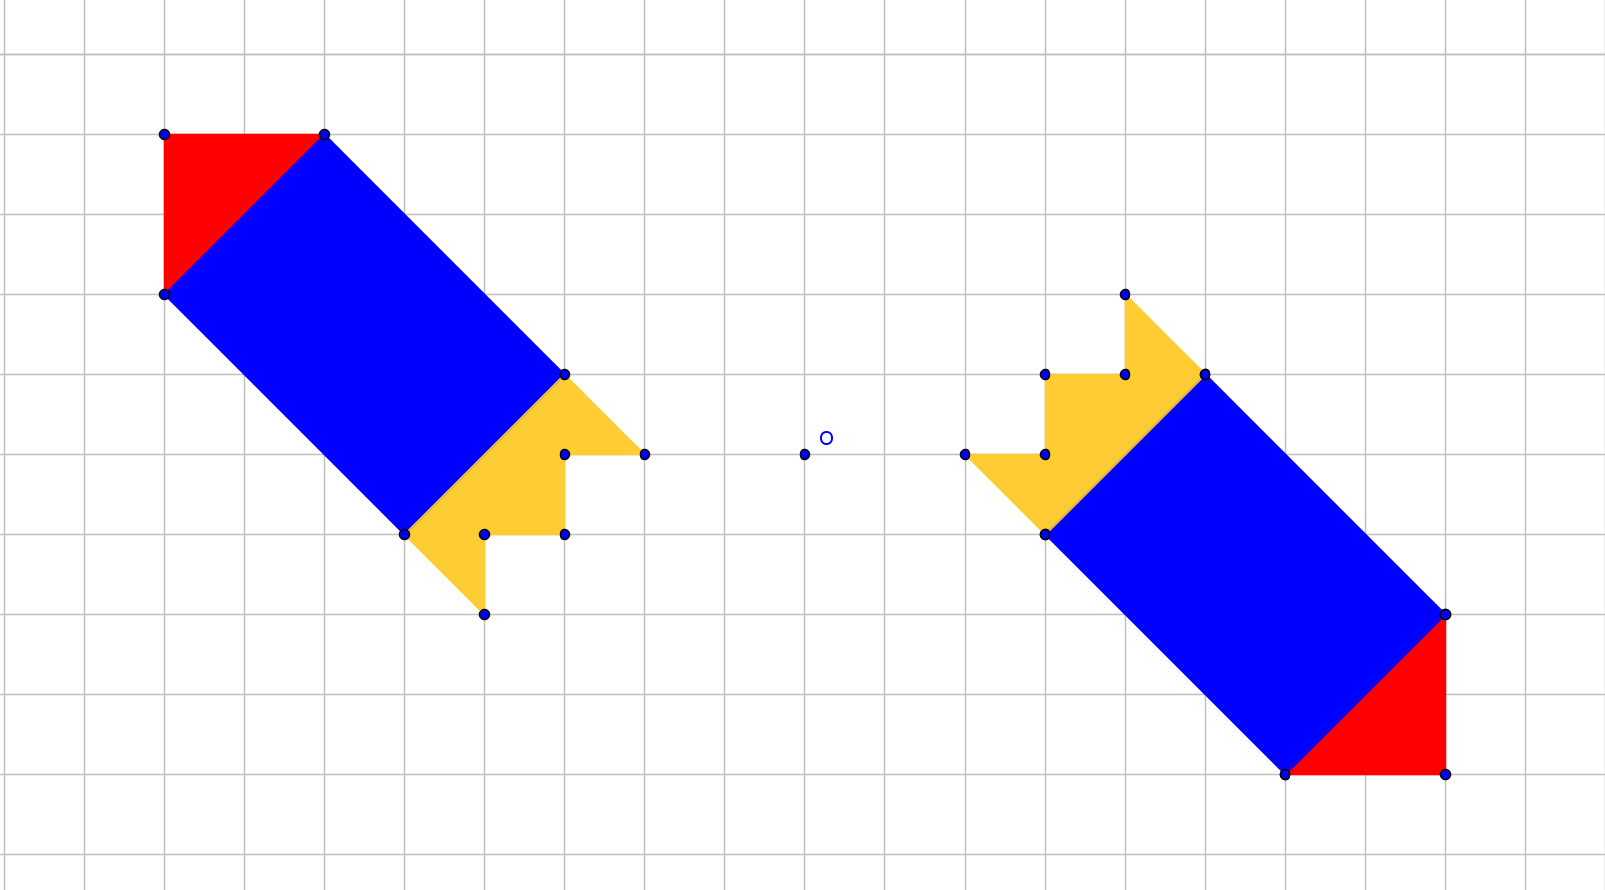 υπερσύνδεσμο. Σχόλιο: Θα μπορούσαμε να θεωρήσουμε το είδωλο ως αρχικό σχήμα και το αρχικό σχήμα ως είδωλο. Τελικά, τα δύο σχήματα είναι το ένα συμμετρικό του άλλου ως προς το σημείο Ο. 4.